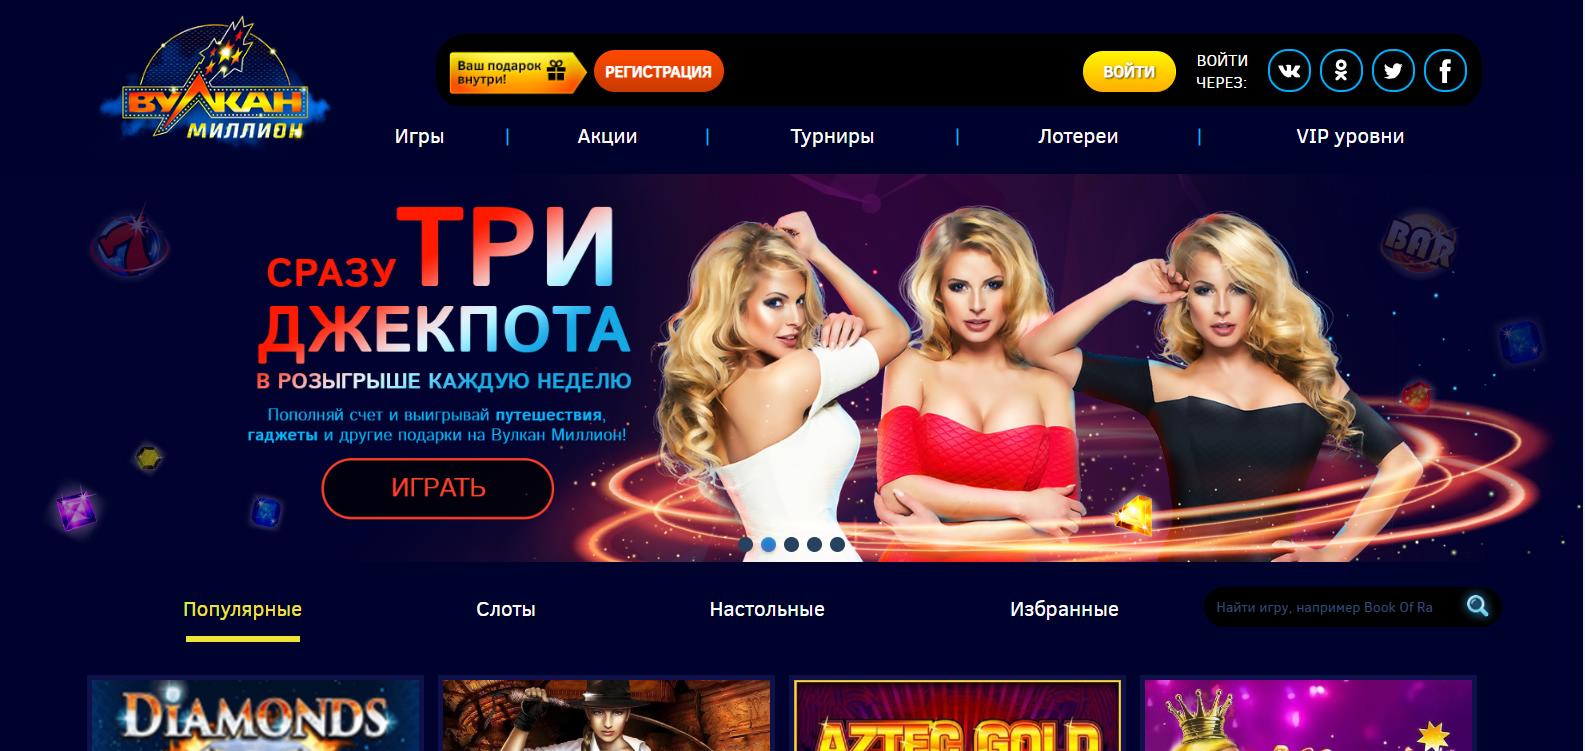 Вулкан казино официальный сайт миллион джойказино бонусы playdom промокод playwin